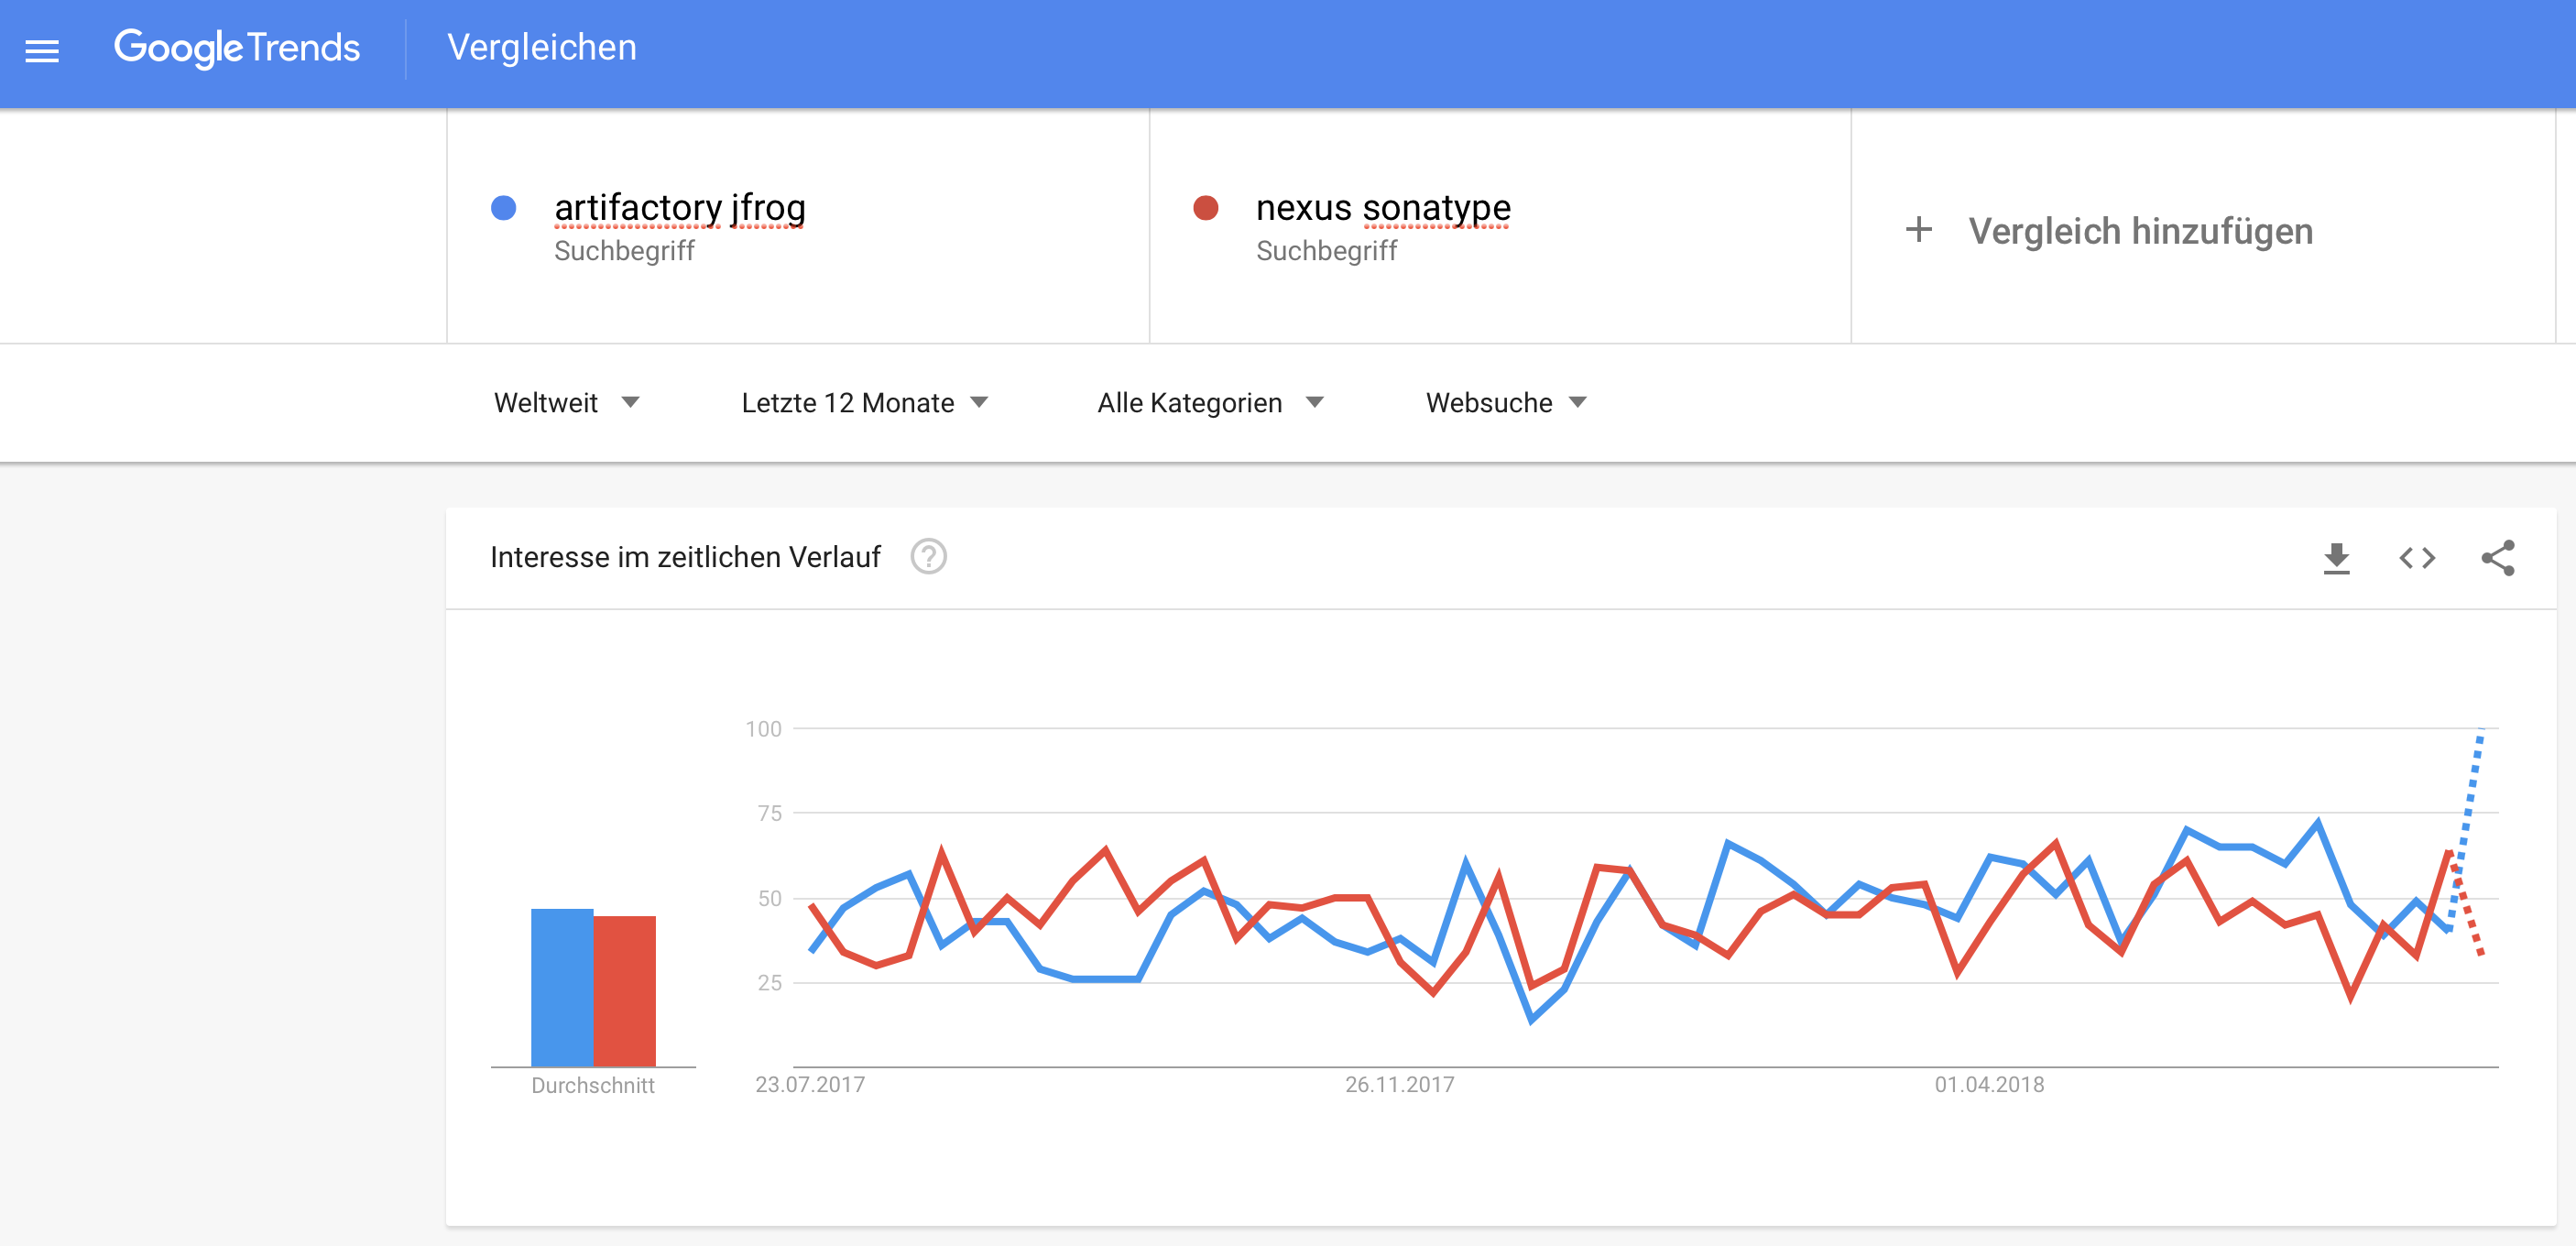 GoogleTrends-Vergleich JFrogs Artifactory und Sonatypes Nexus